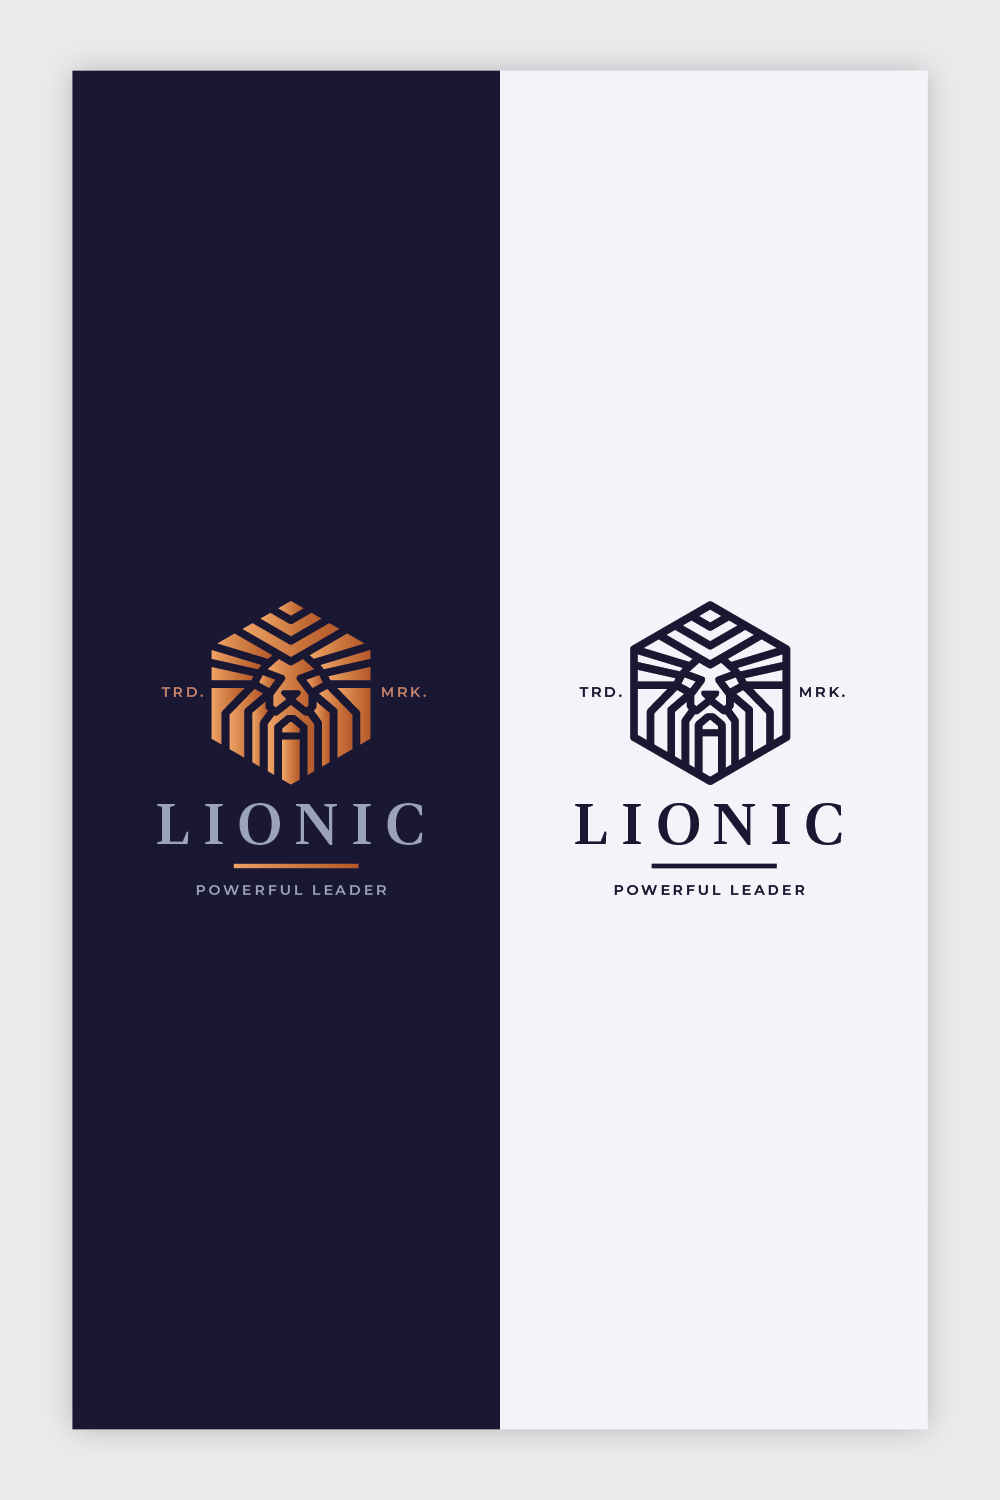 Lionic Lion Head Logo pinterest preview image.